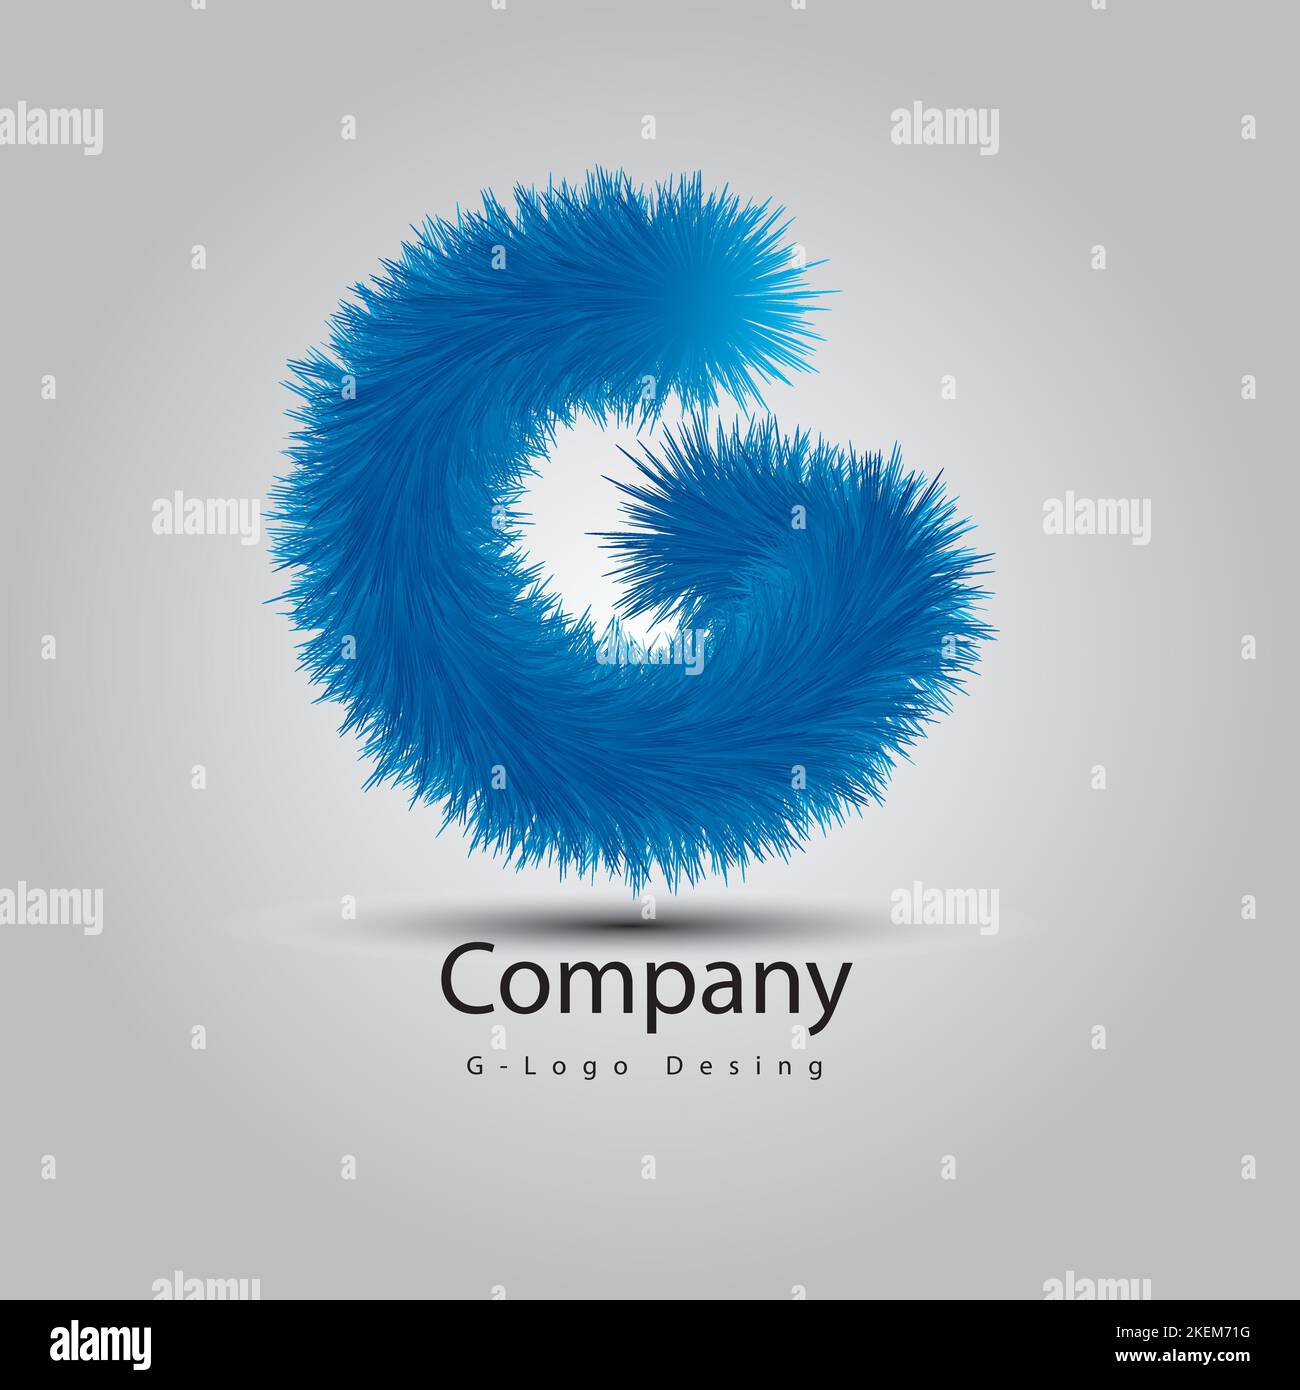 G Letter Logo Design Illustrator || g letter logo vector free download Stock Vector